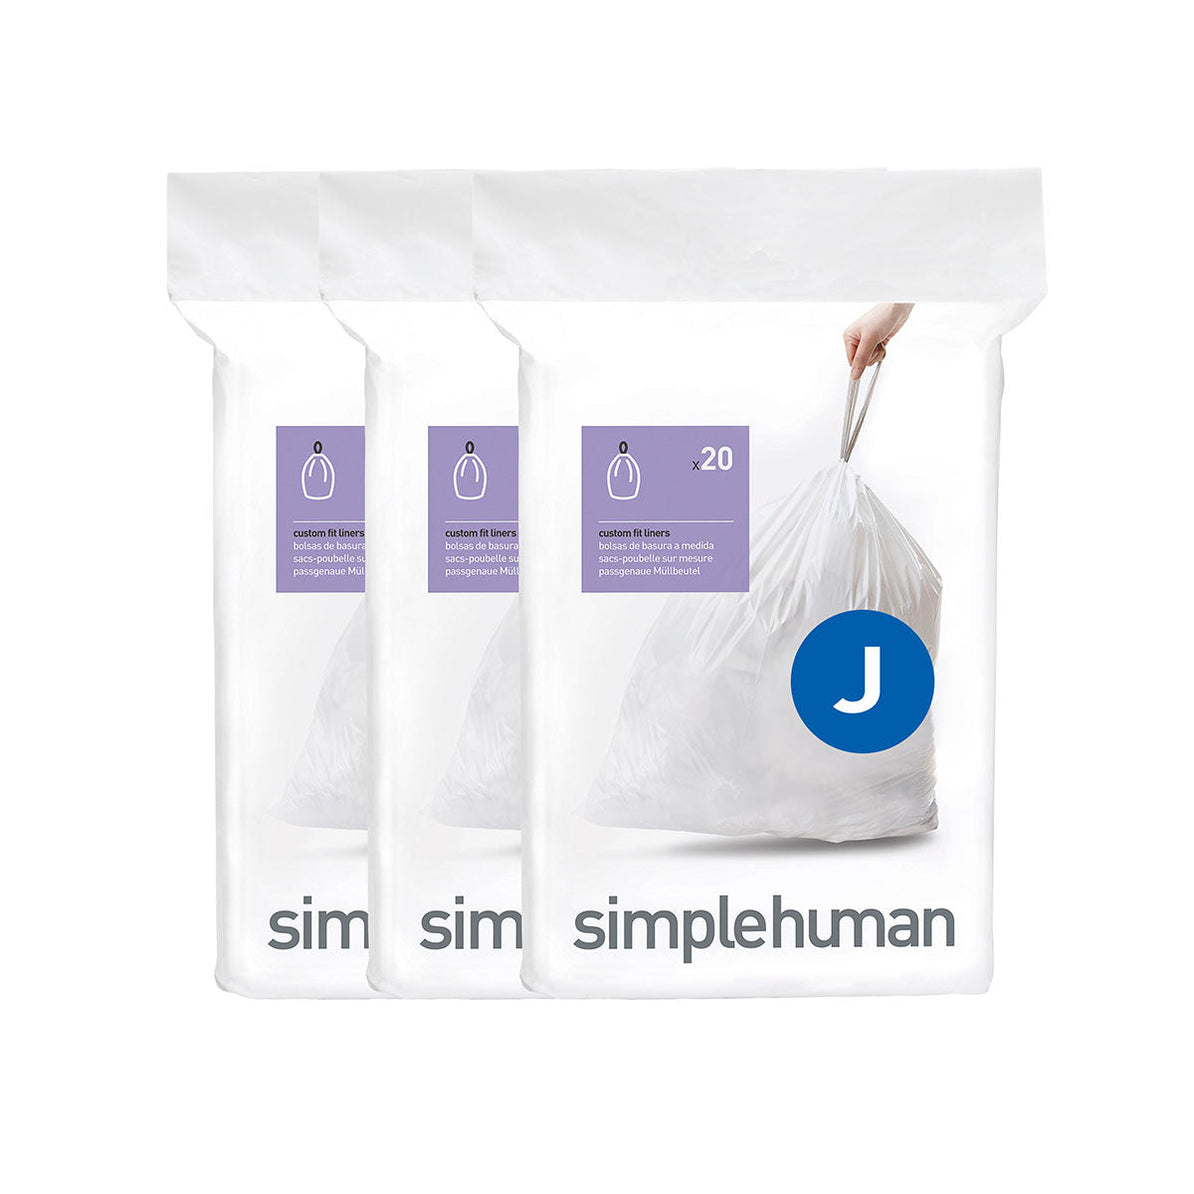 שקיות אשפה לפח 30-45 ליטר (J) דגם Simplehuman - CW0259 - סימפליומן